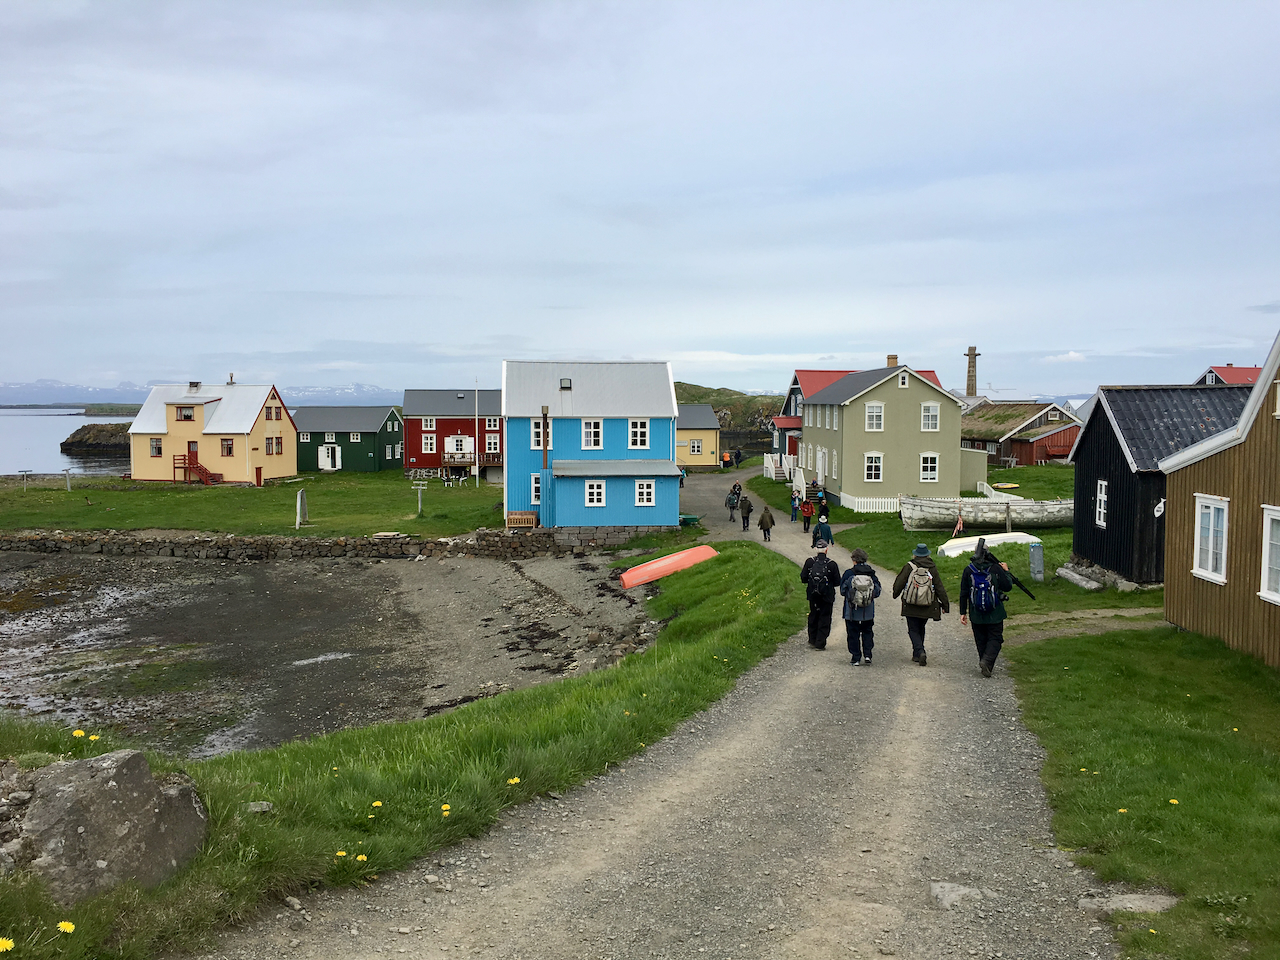 People walking among colorful old houses on Flatey island